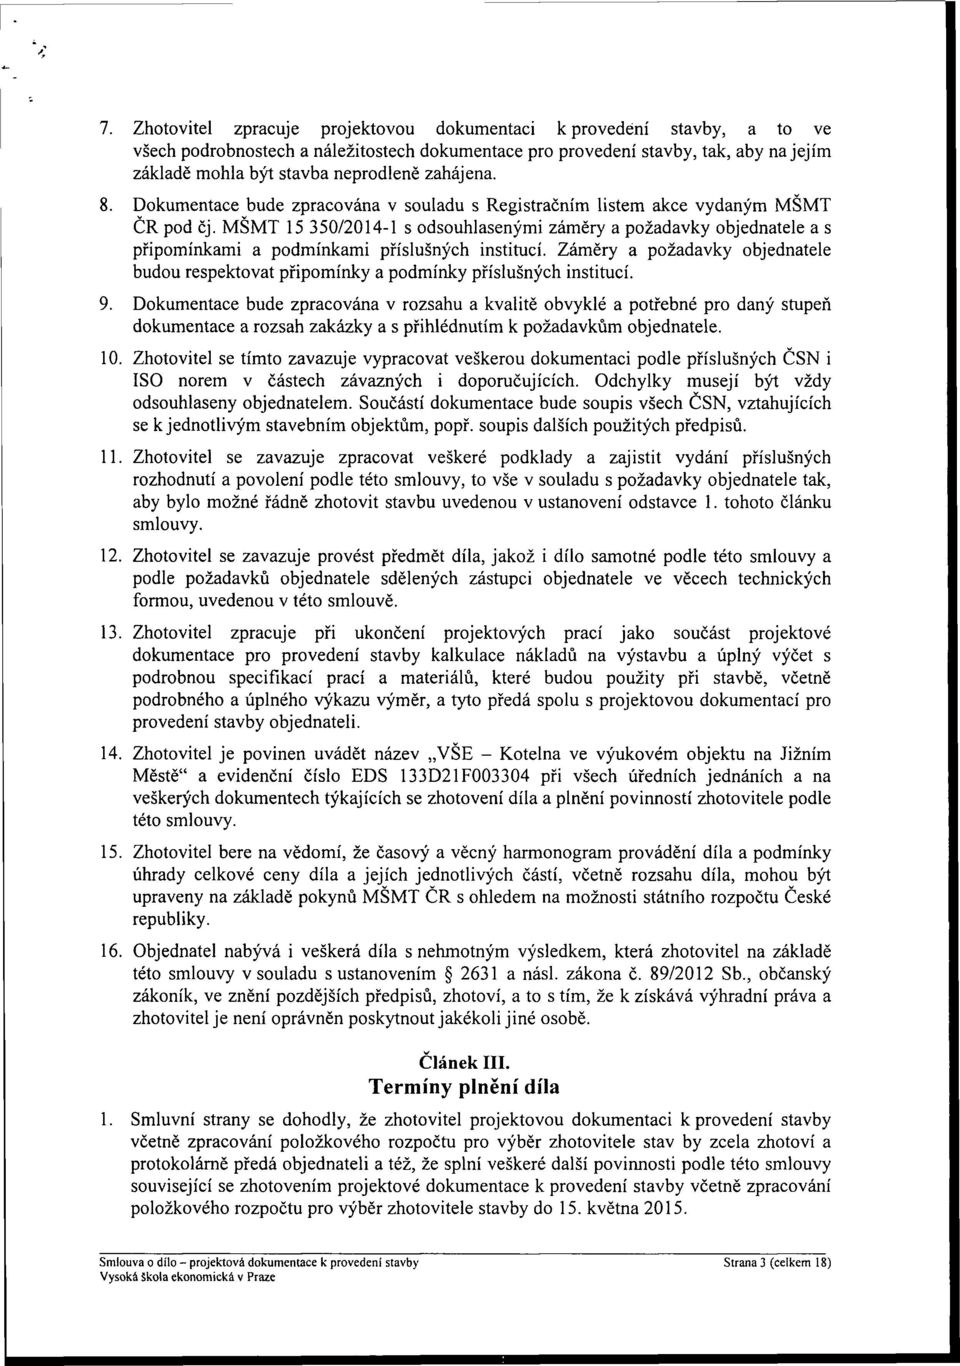 MŠMT 15 350/2014-1 s odsouhlasenými záměry a požadavky objednatele a s připomínkami a podmínkami příslušných institucí.